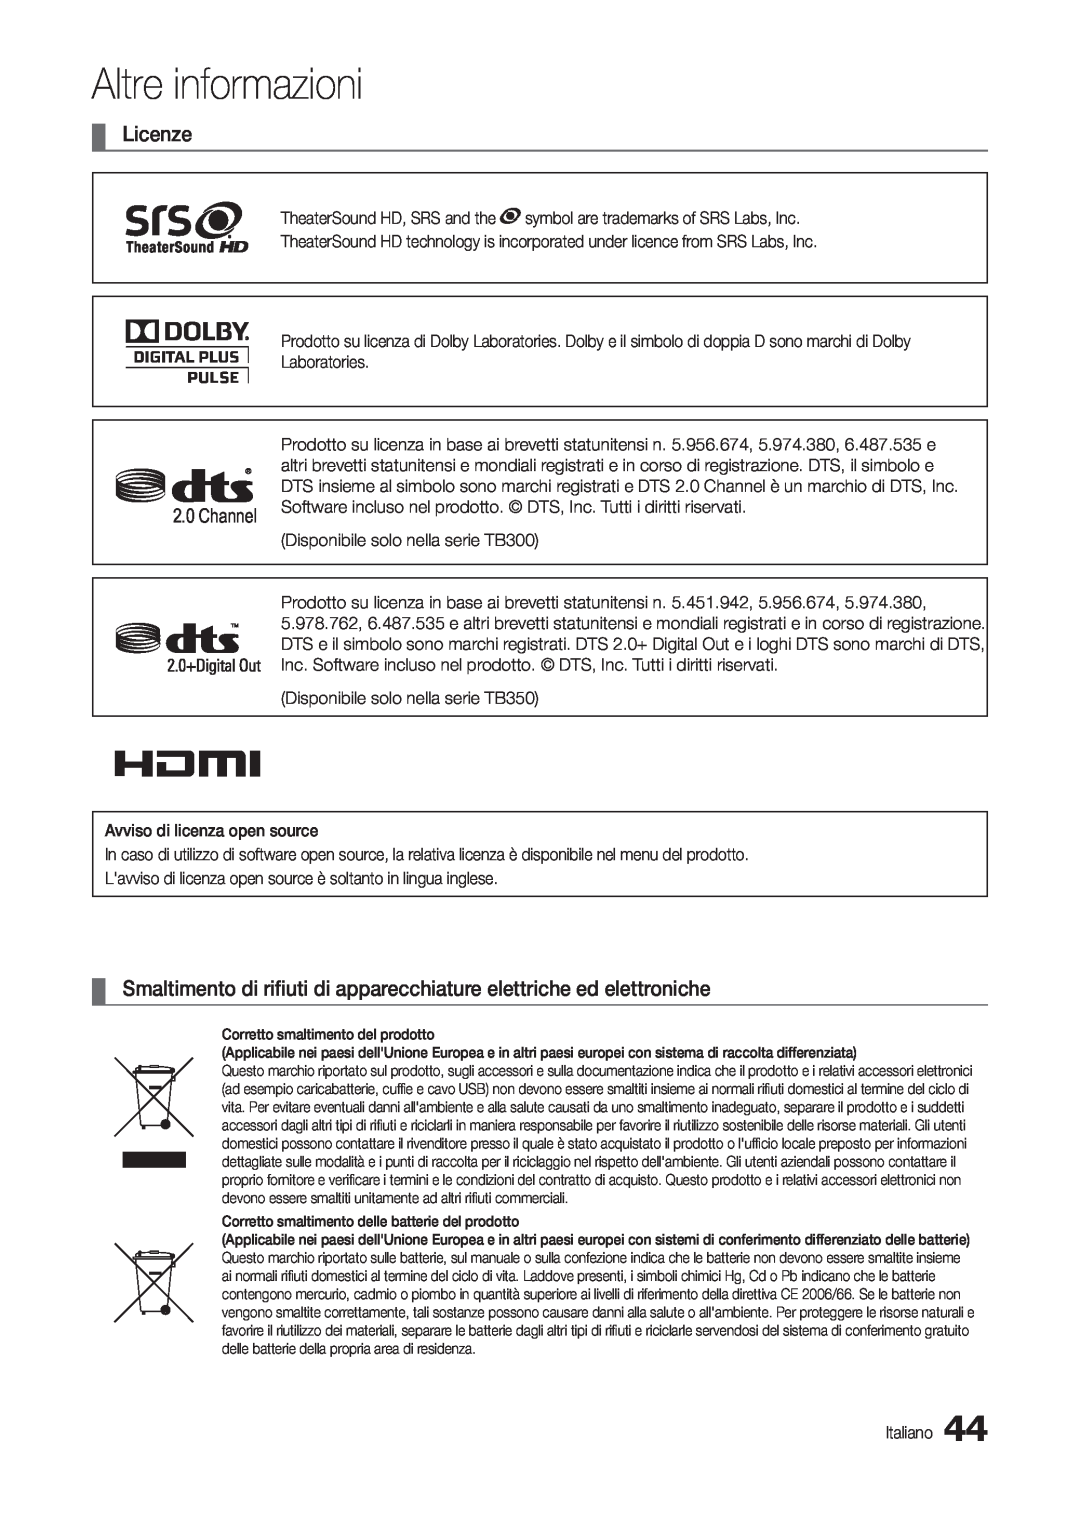 Samsung LT24B300EEC/EN Licenze, Smaltimento di rifiuti di apparecchiature elettriche ed elettroniche, Altre informazioni 